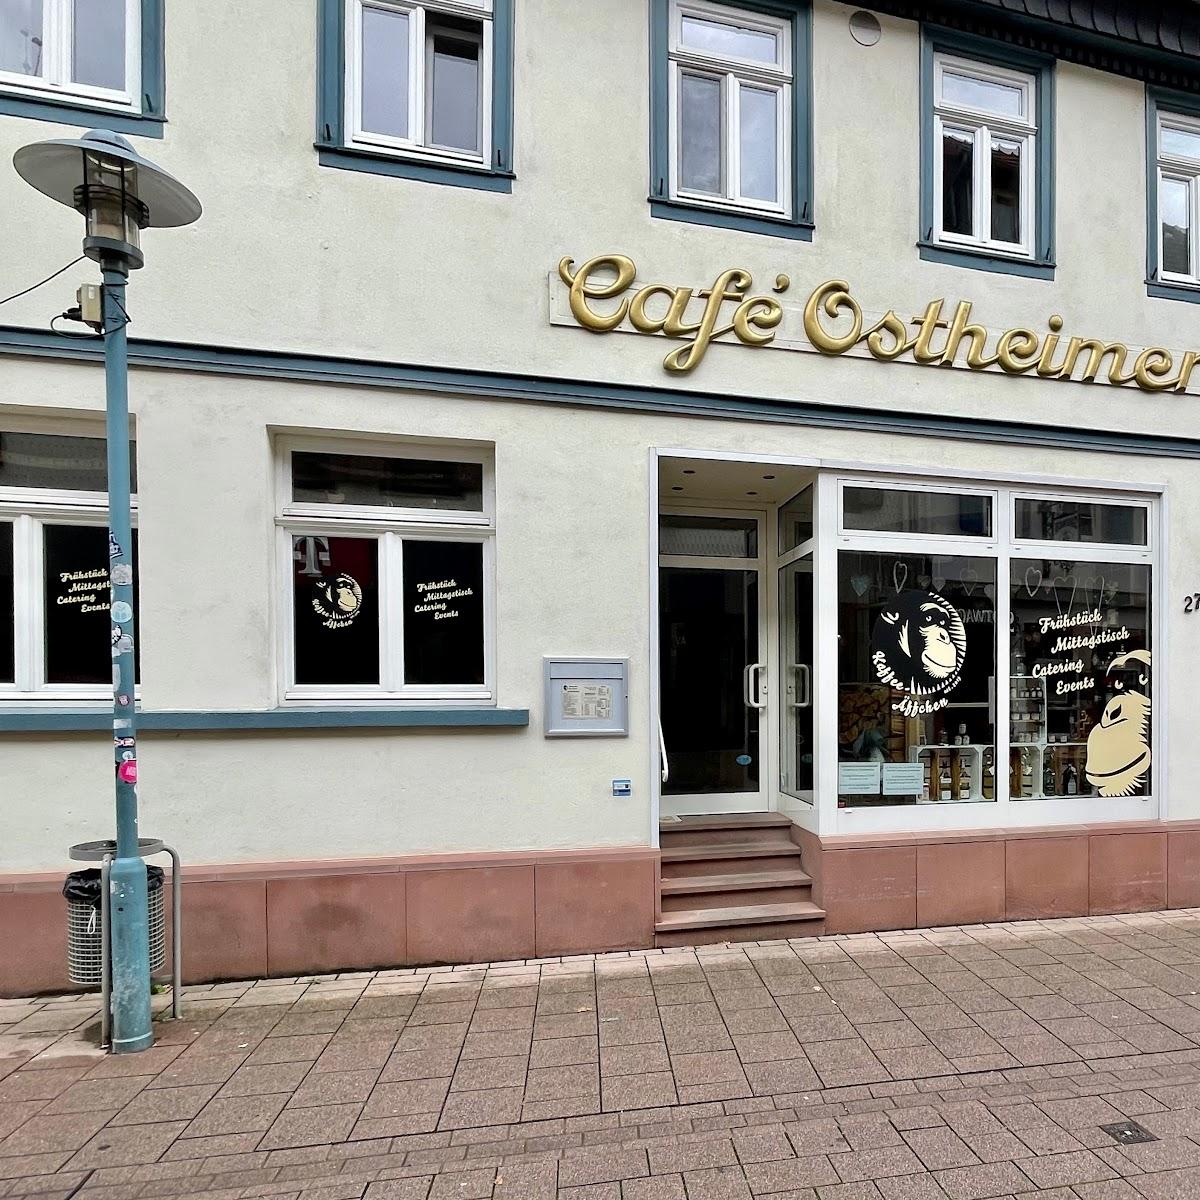 Restaurant "Café Ostheimer" in Dieburg